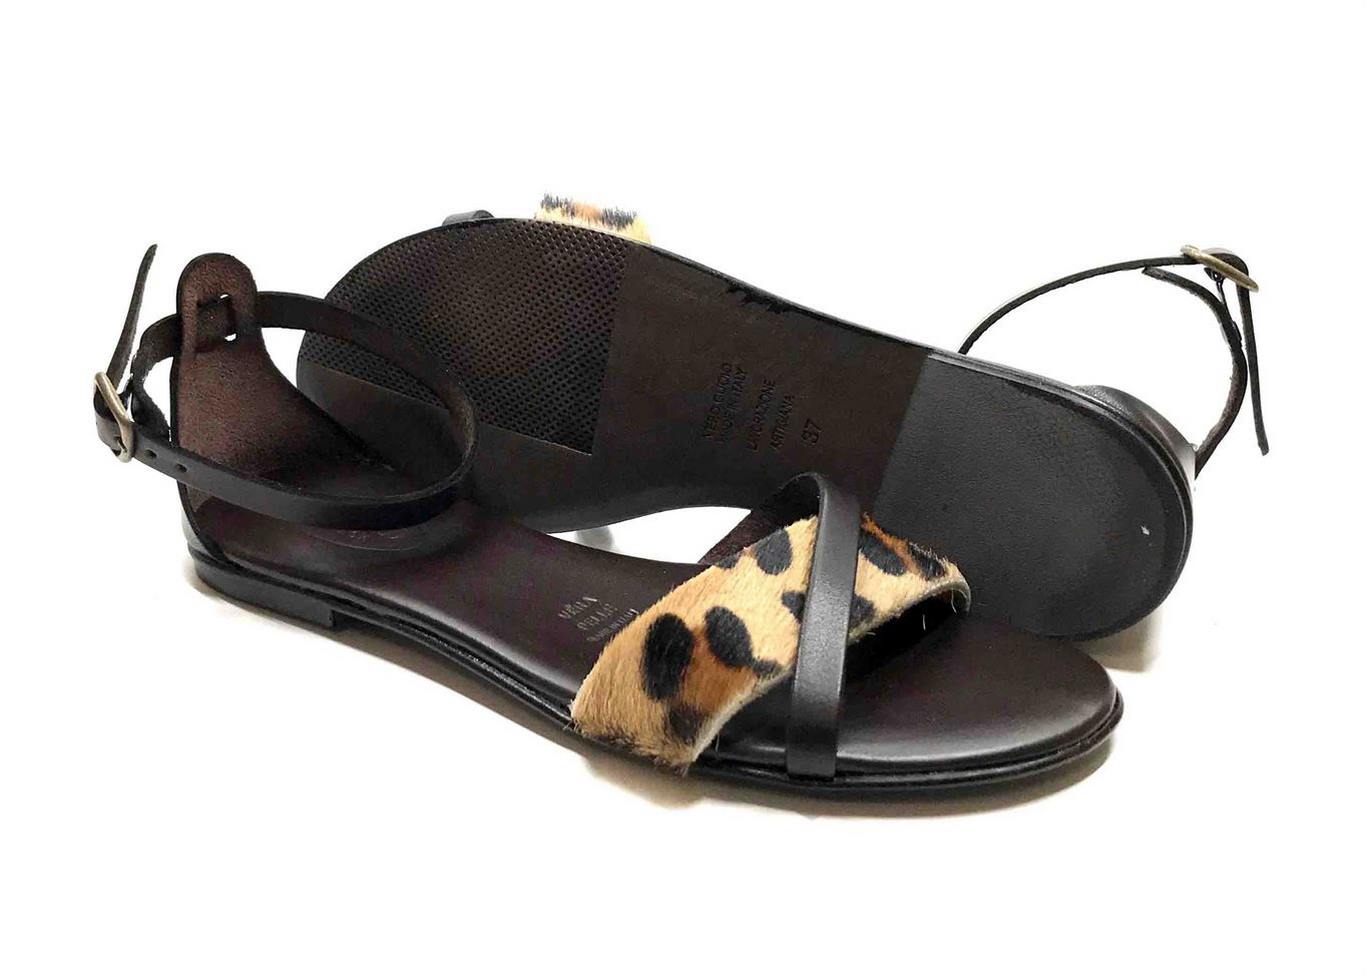 Sandalo con soletta imbottita in vacchetta color Marrone e cavallino maculato